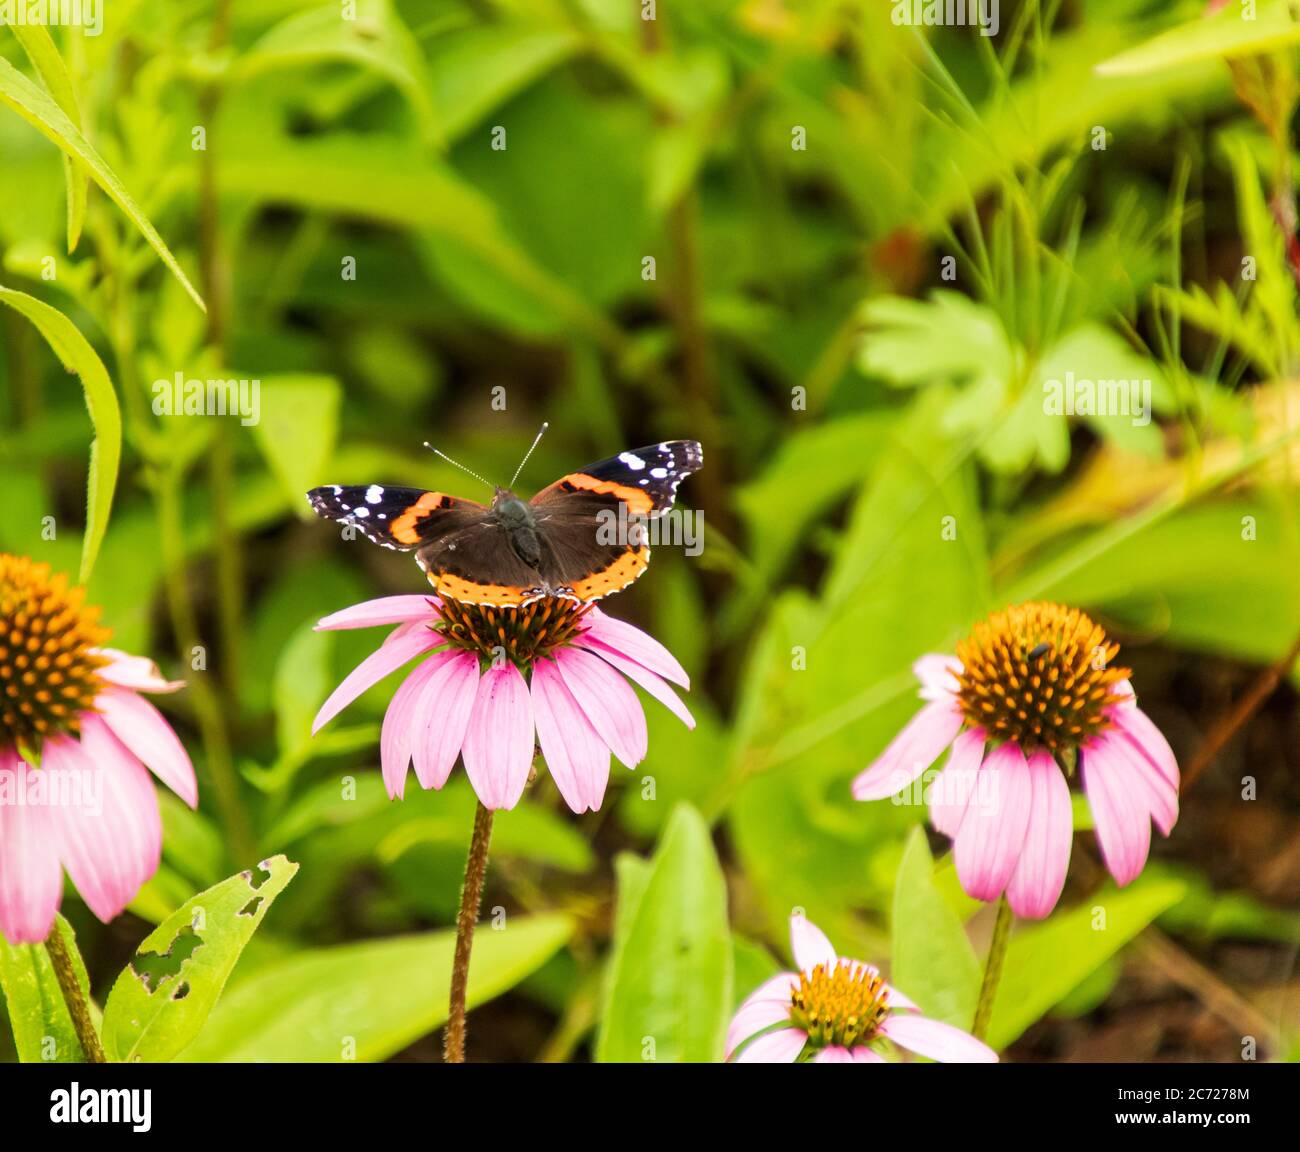 Nahaufnahme eines roten Admiral Butterfly auf einer lila Blume in einem Garten sitzend Stockfoto